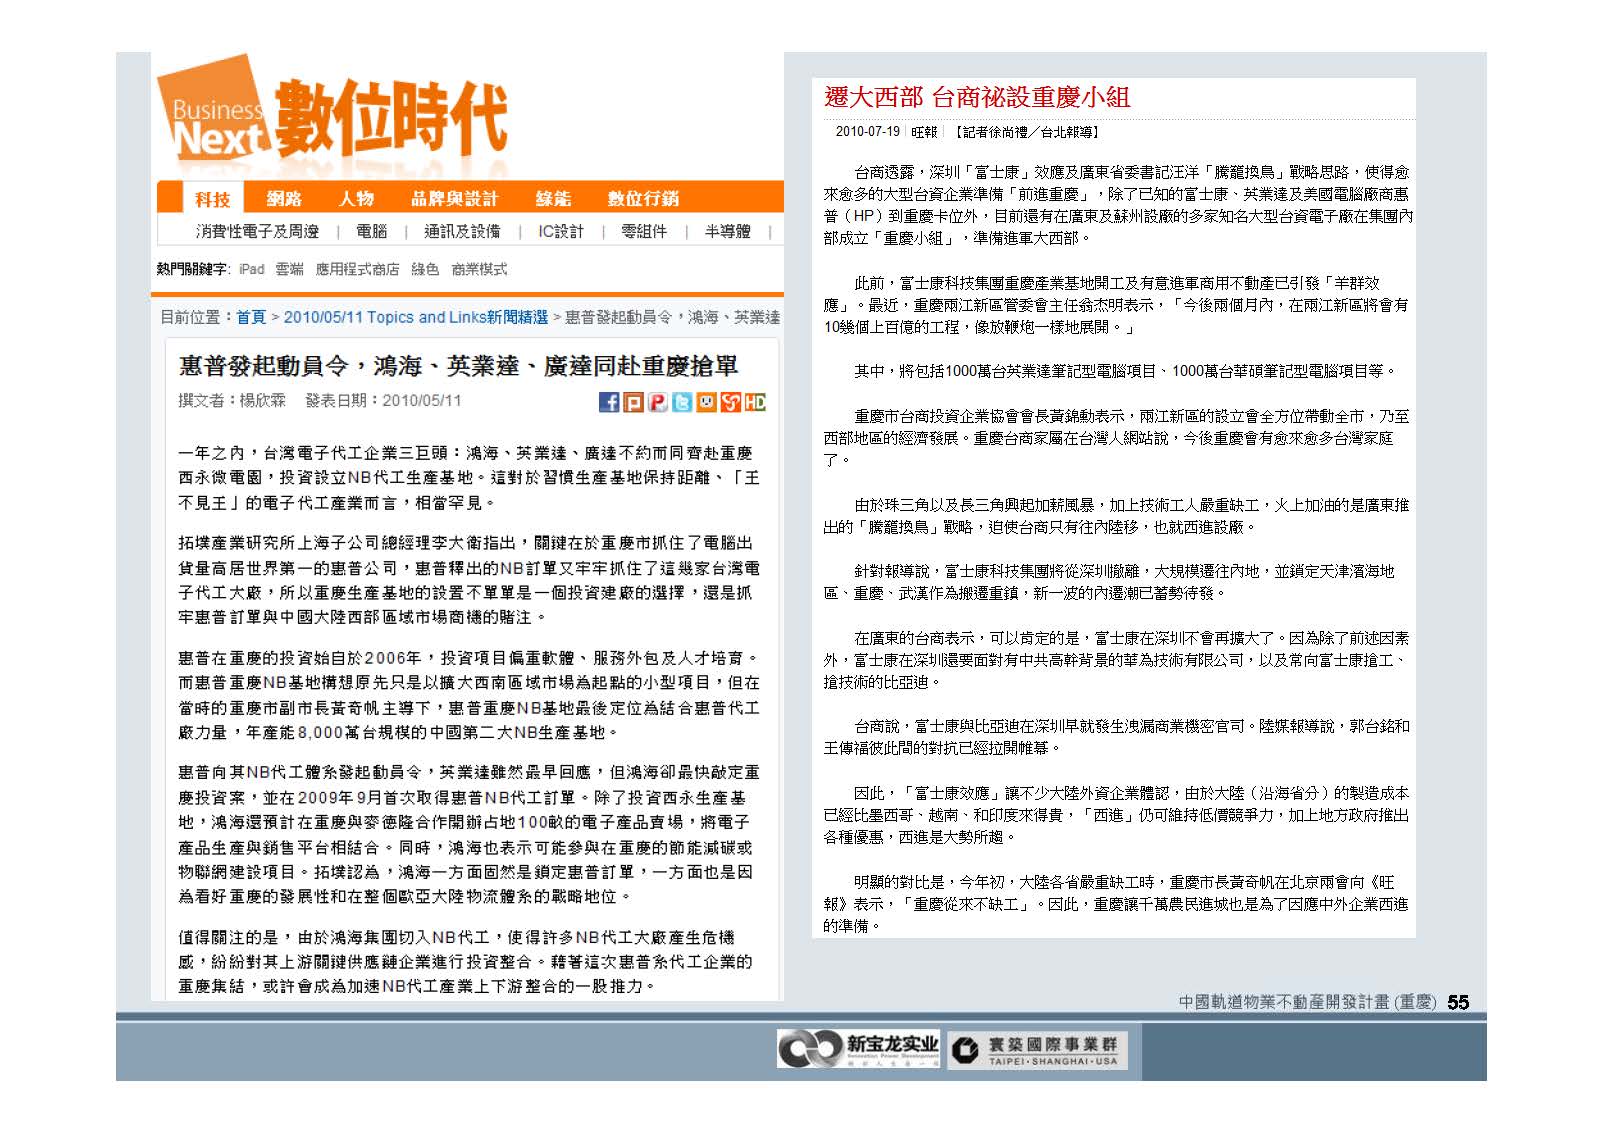 20100812-中國軌道物業不動產開發計畫(重慶)_頁面_56